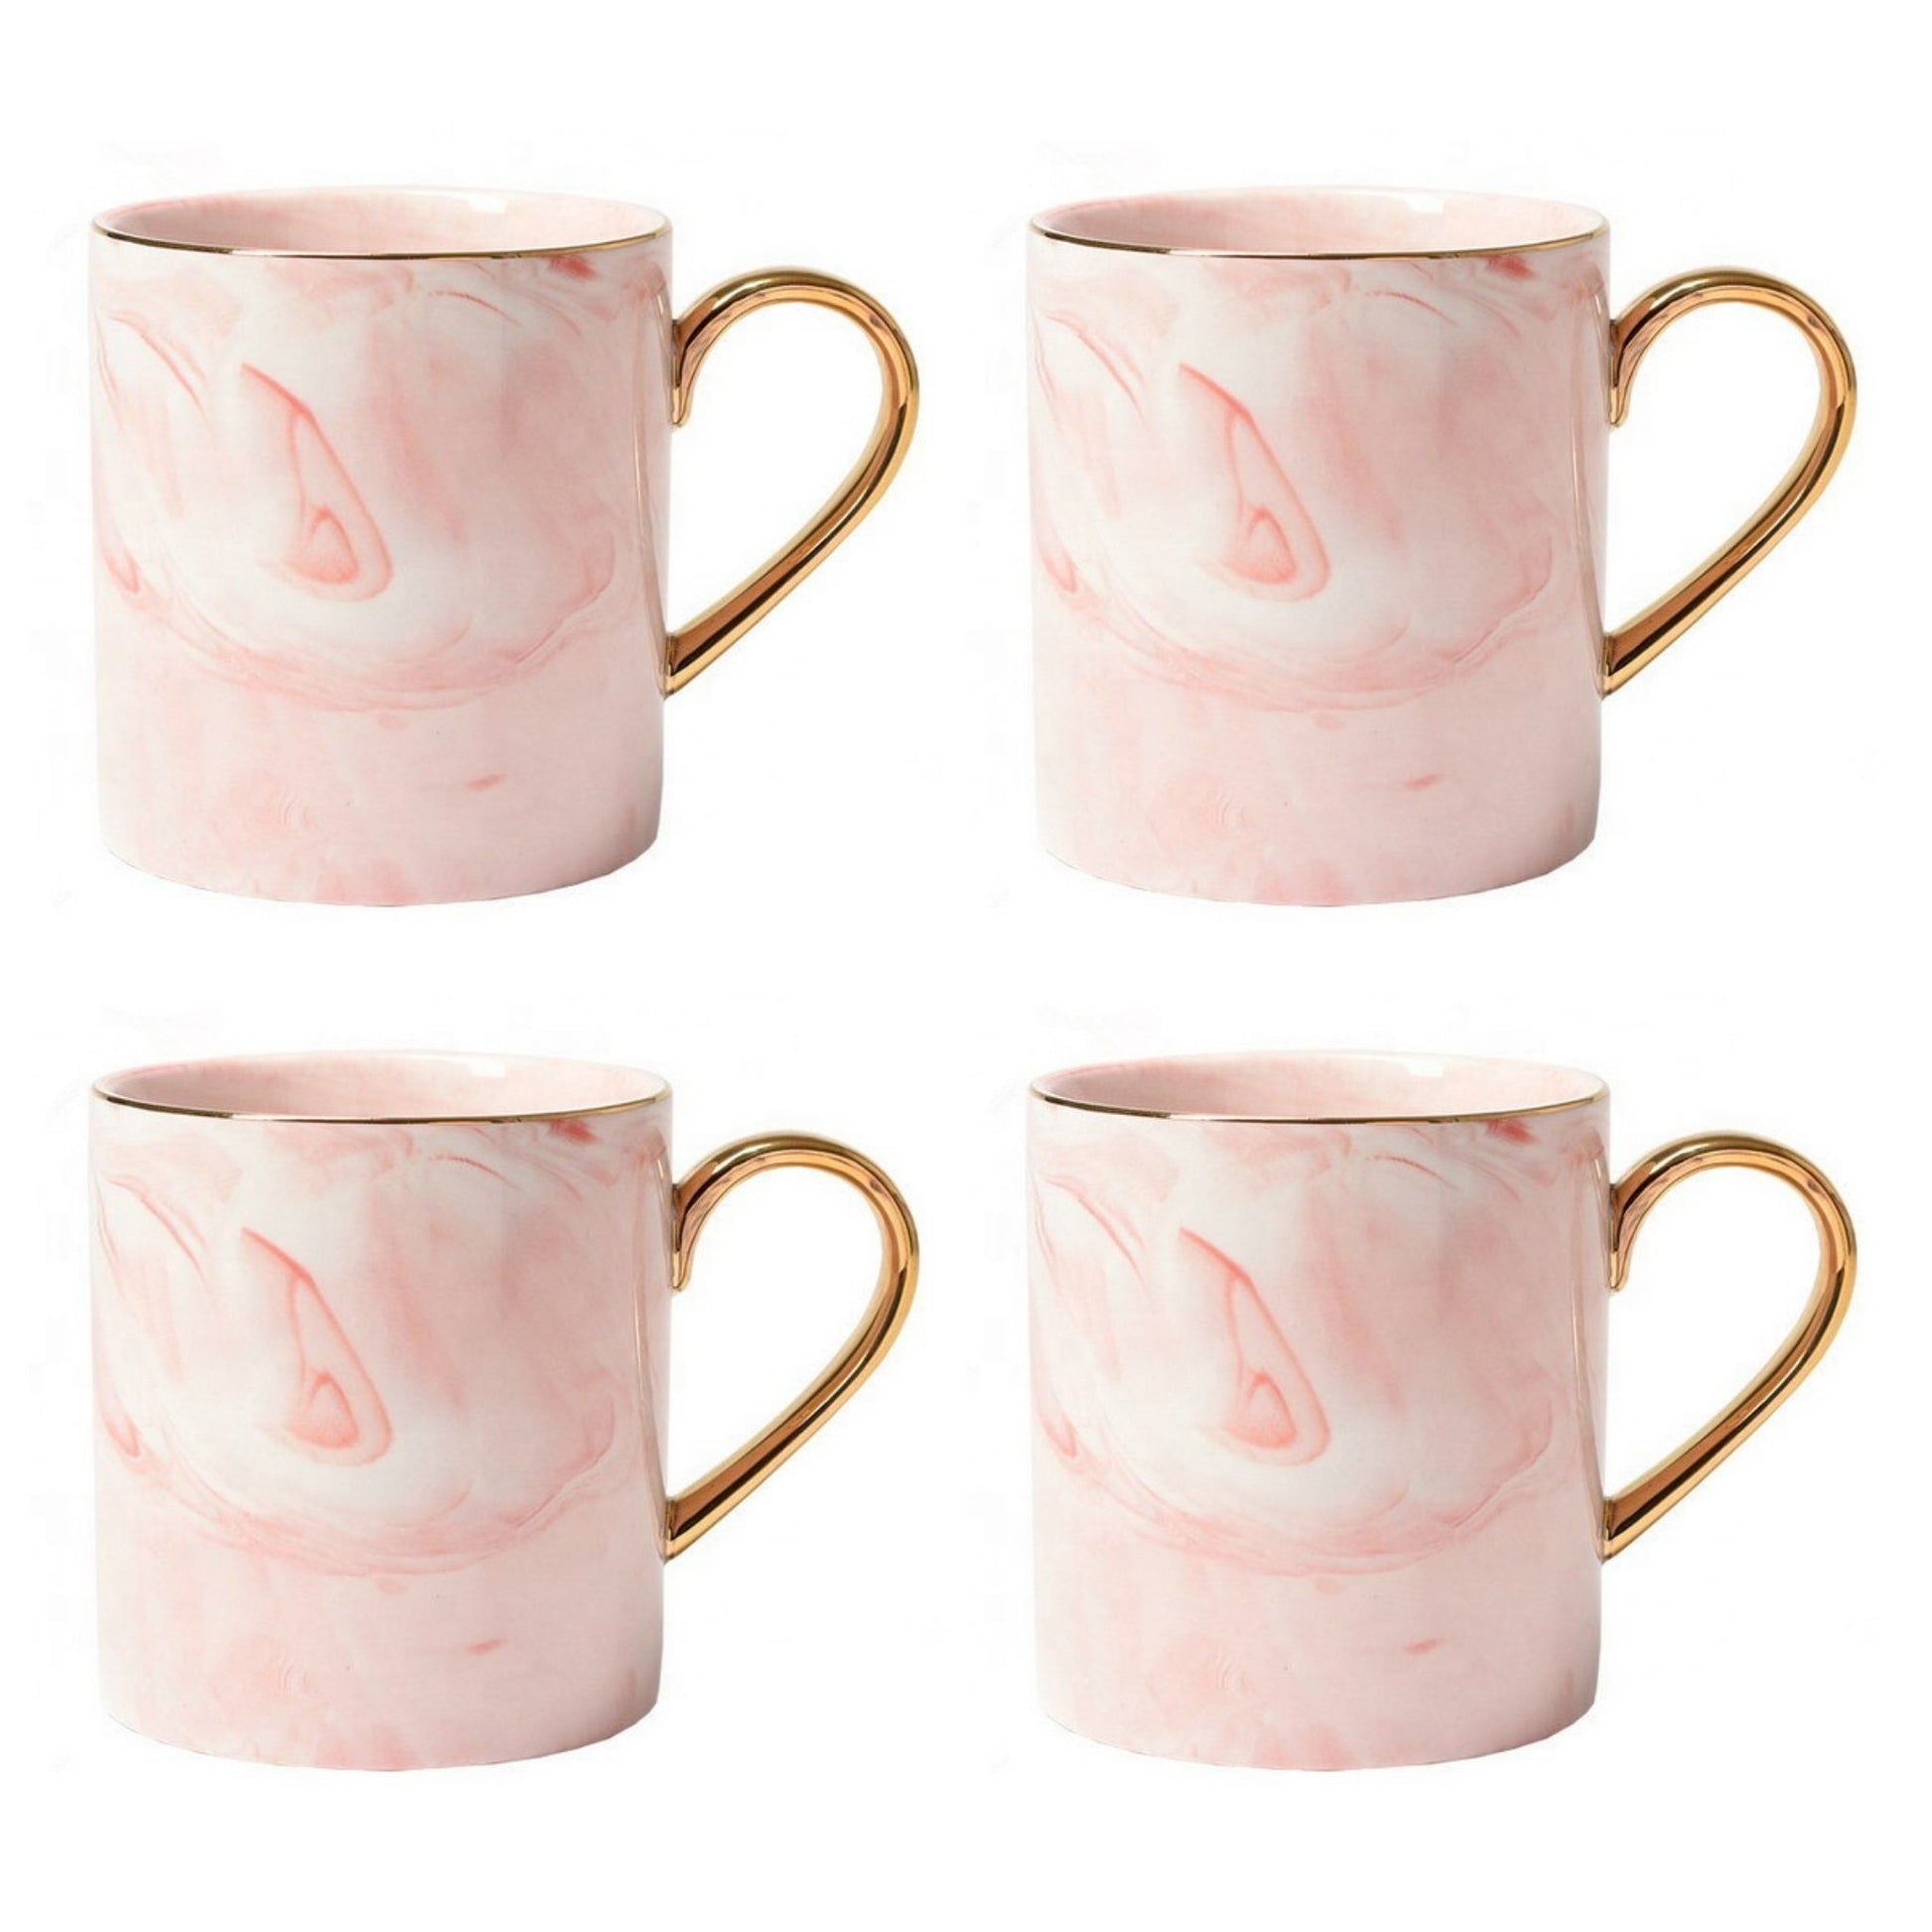 Rosa Marmor Tasse Goldener Henkel Schöne Tassen zum Verschenken Luxus Tassen Set Schönes Marmor Geschirr Luxus Geschirr mit Gold 4er Set